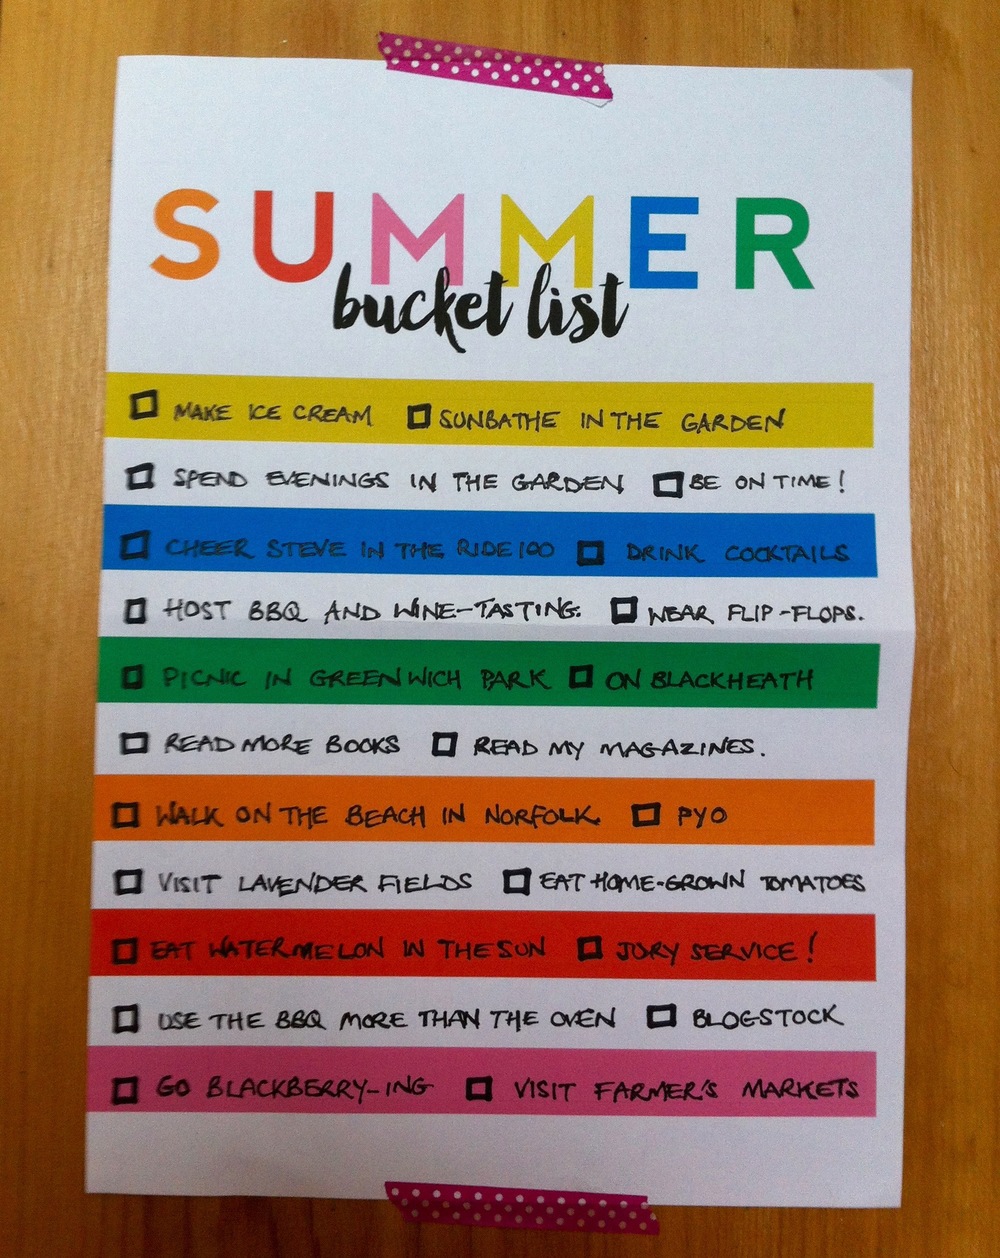 A Summer bucket list